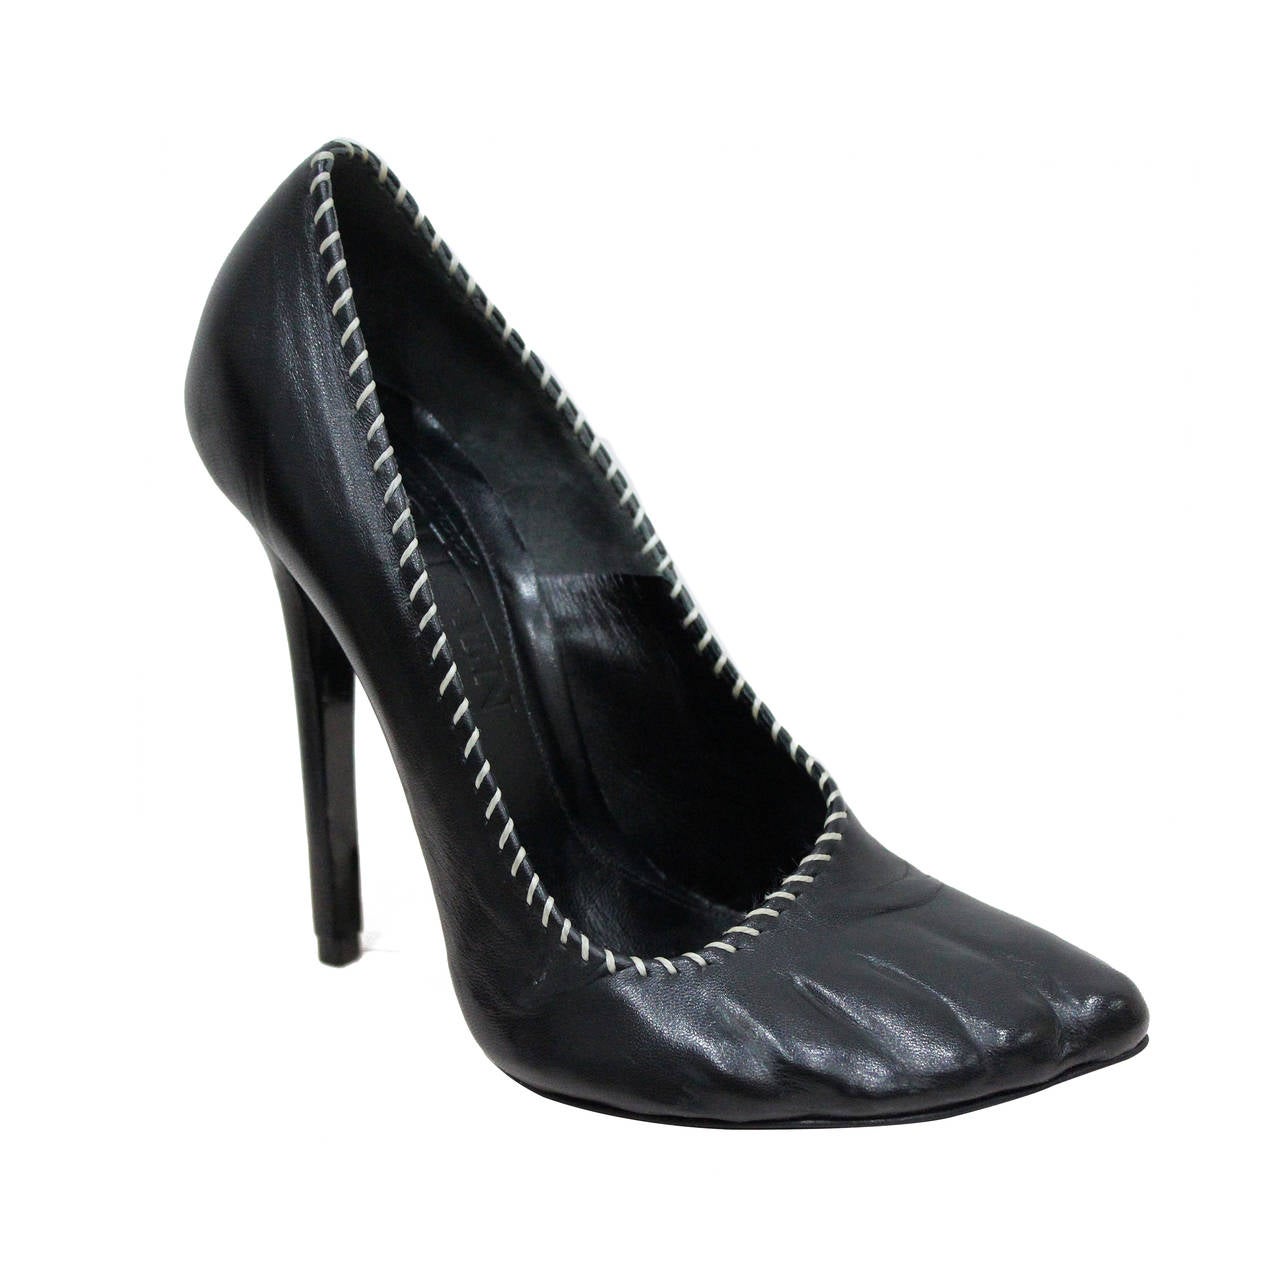 Collectible Alexander McQueen runway moulded 'toe' leather heels, S/S 2009